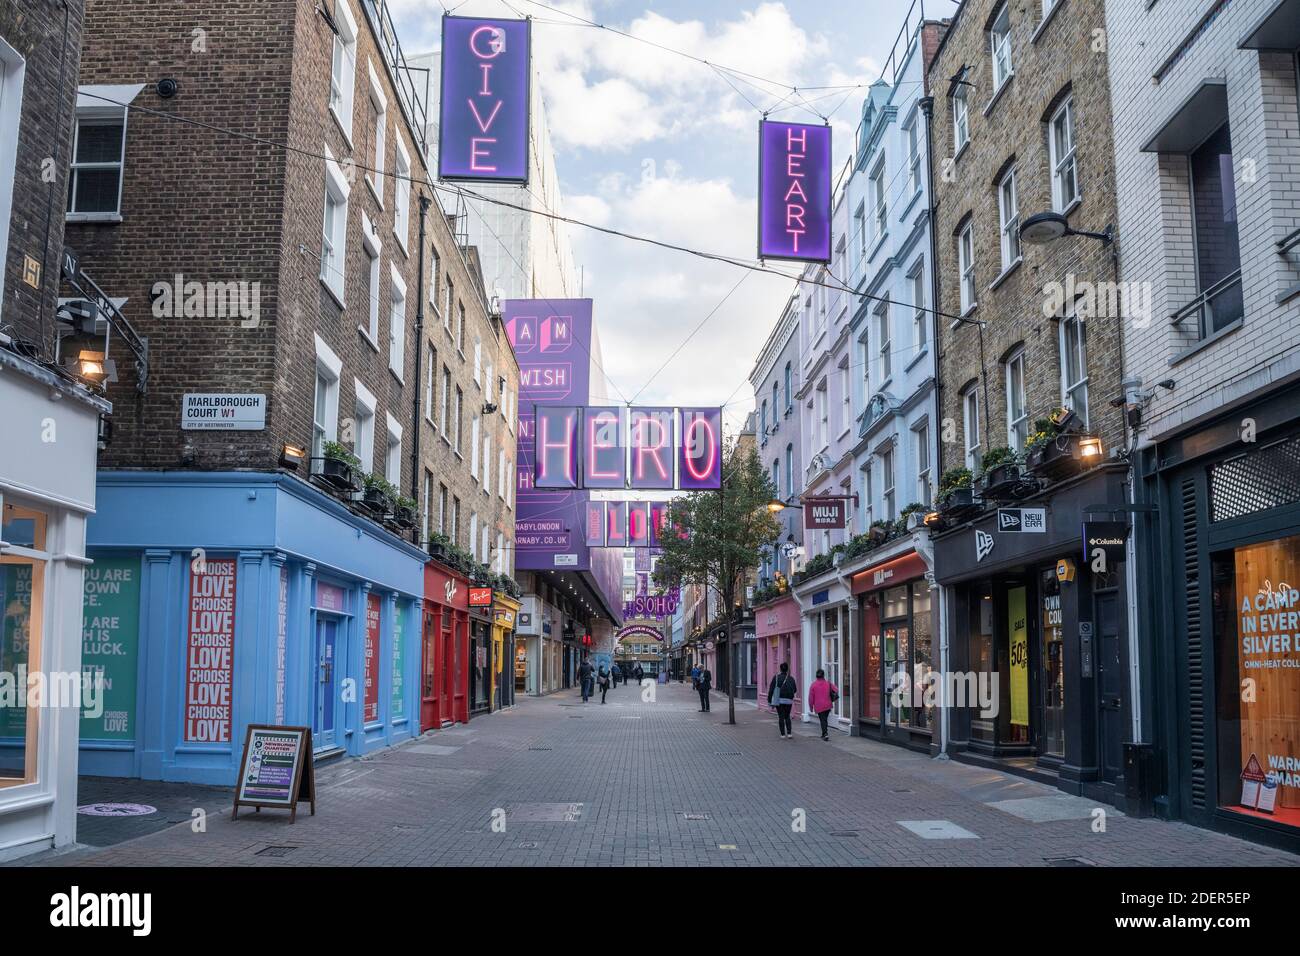 Leere Londoner Straßen während der Covid-19 Absperrung an der ruhigen, menschenleeren Carnaby Street in Soho, einem beliebten Touristengebiet während der globalen Pandemie Coronavirus Abschaltung in England, Europa Stockfoto